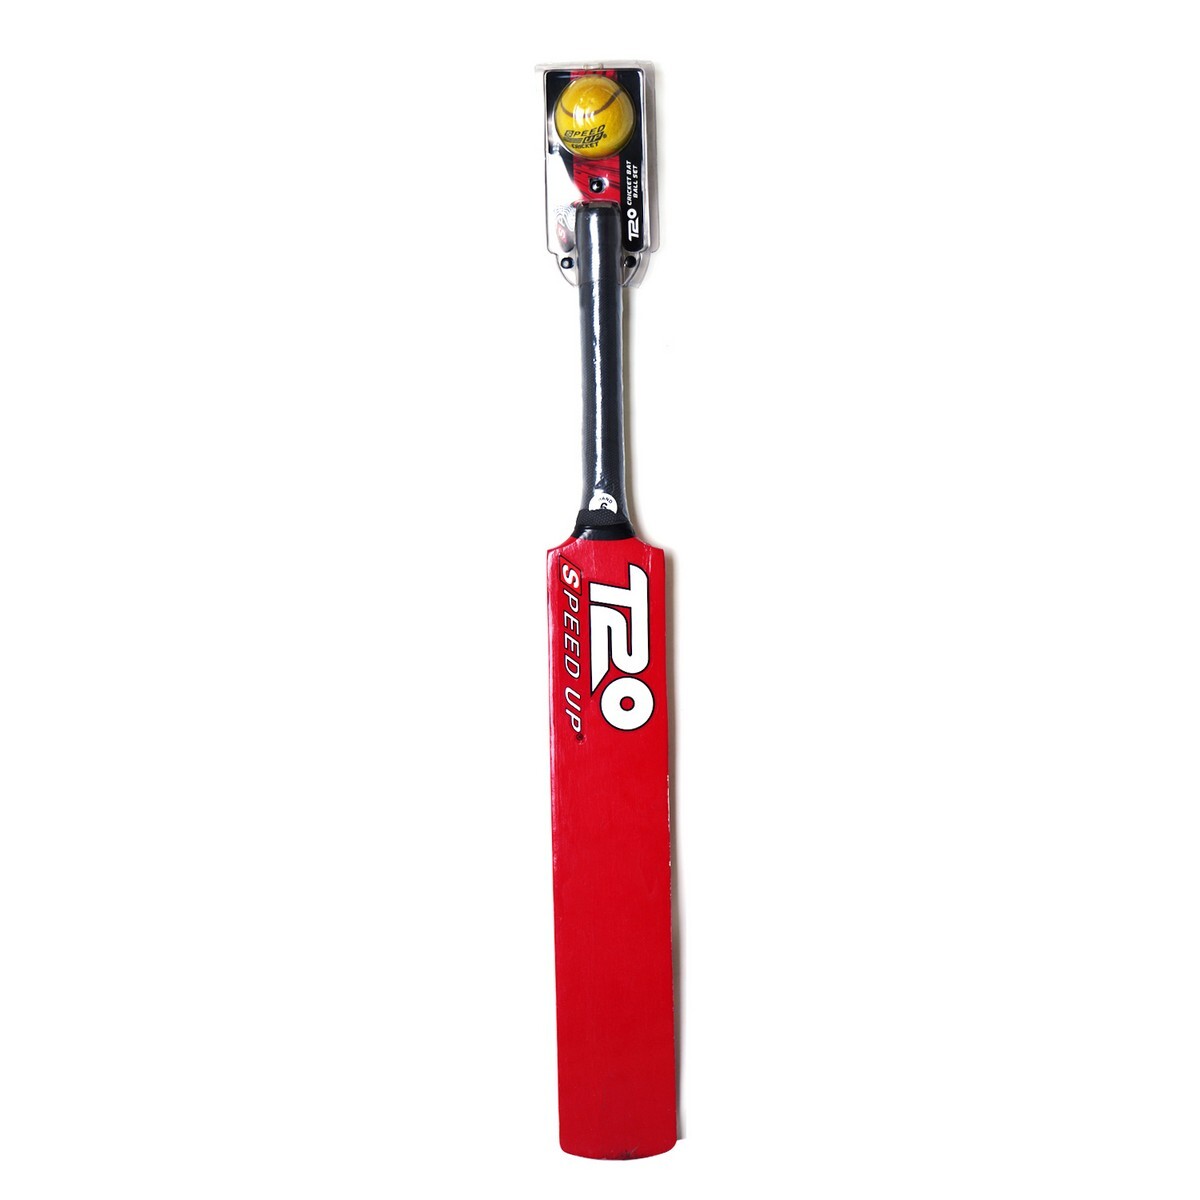 Speed Up T20 Cricket Bat & Ball-2168-6